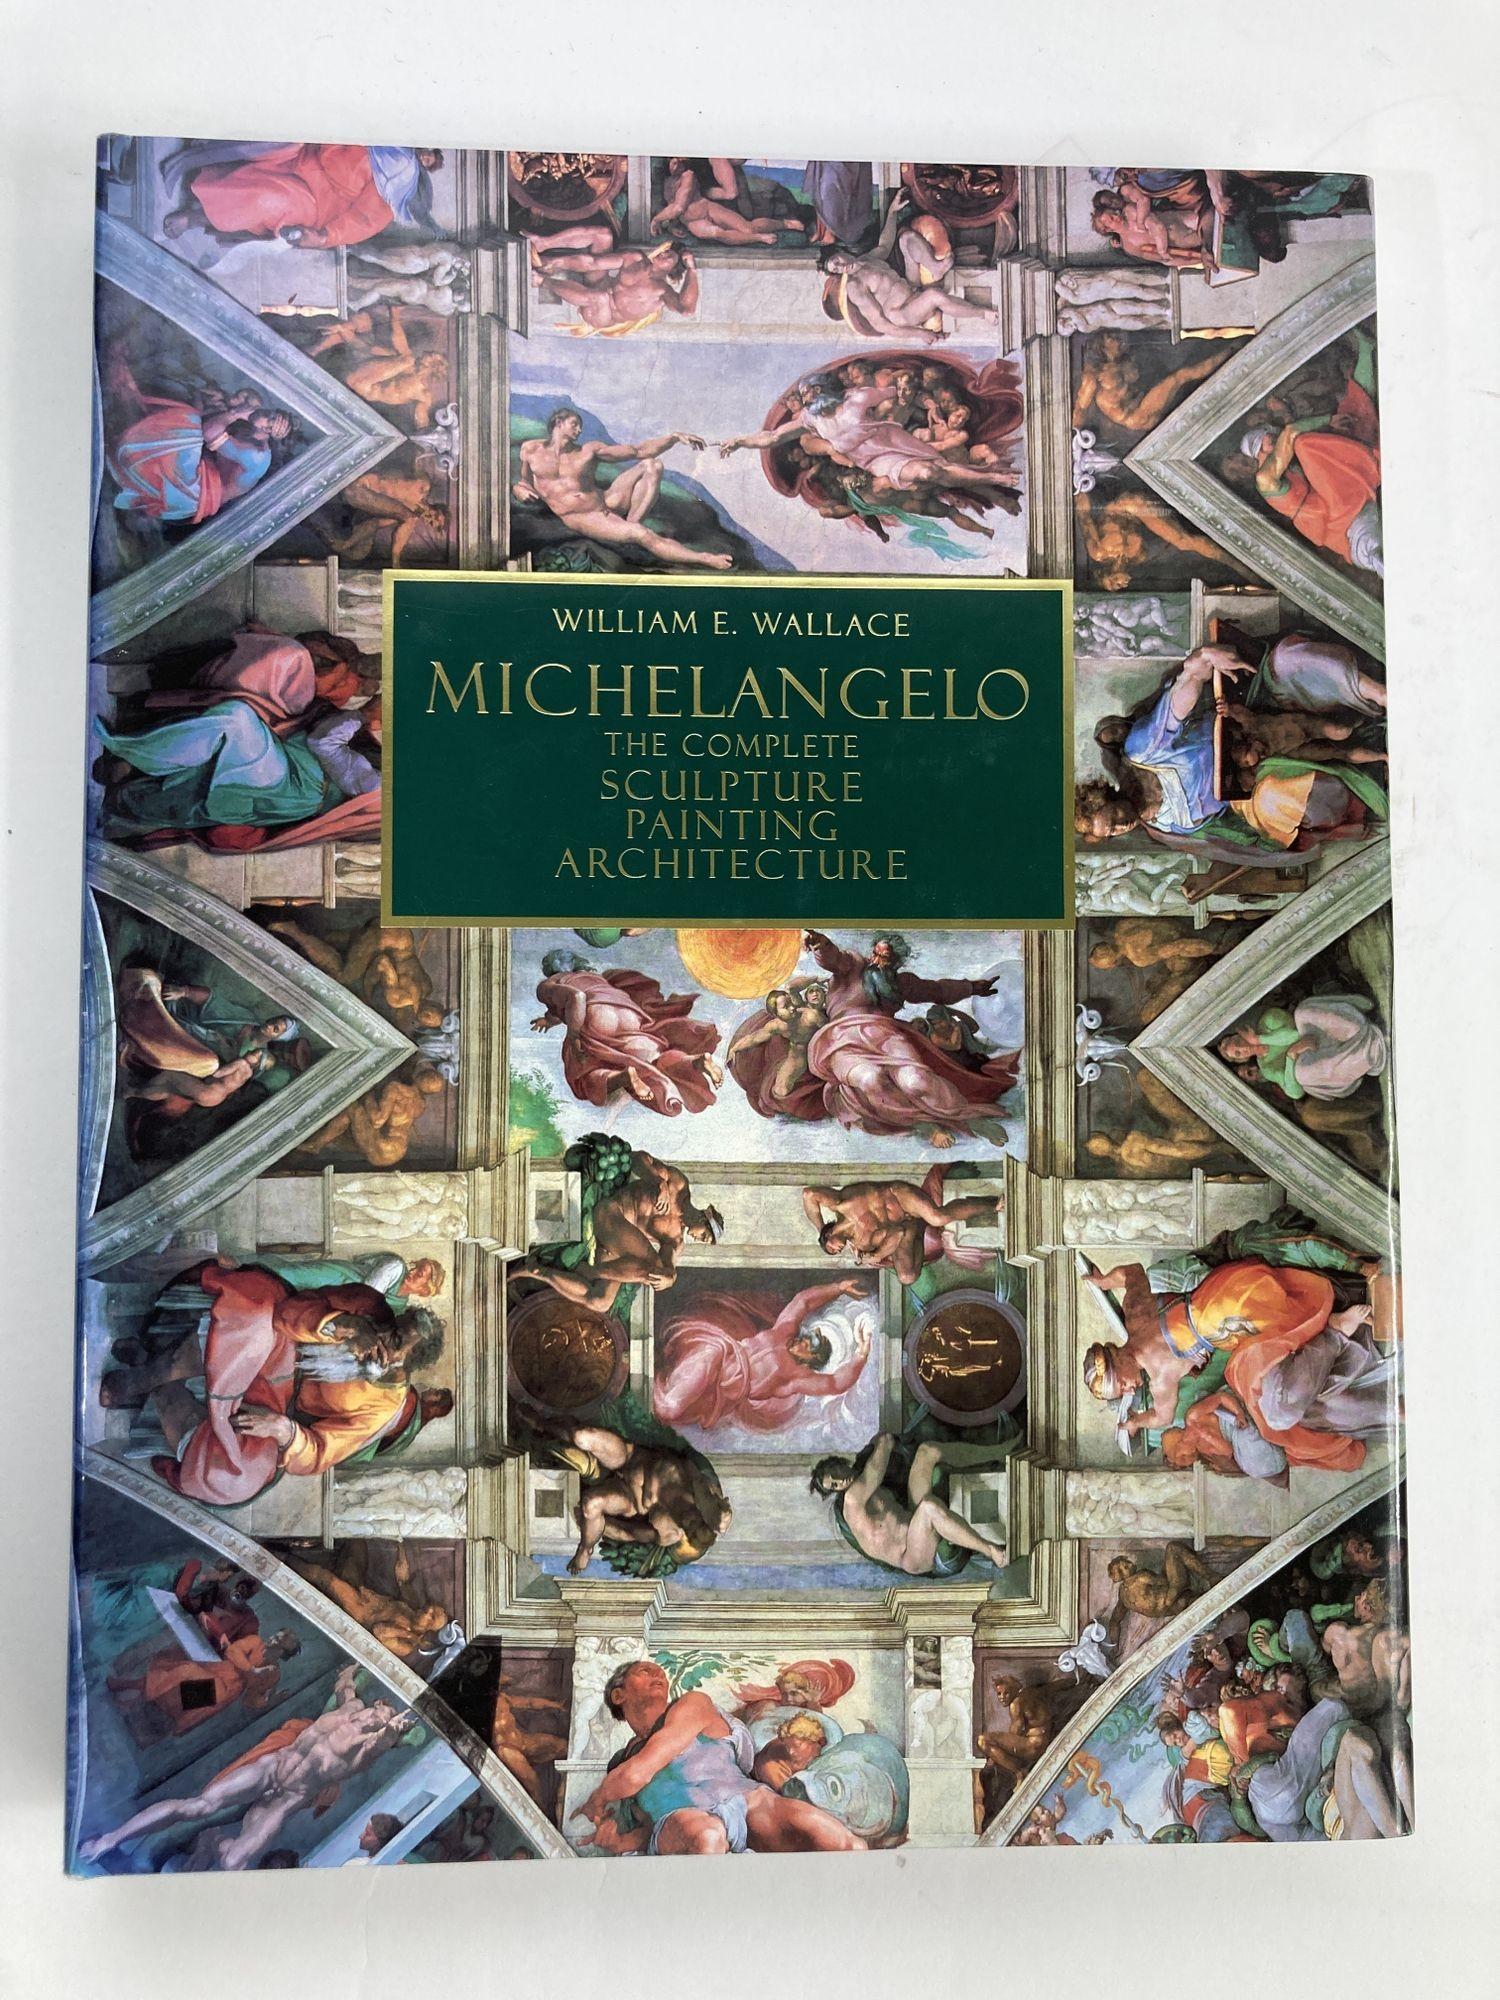 Michelangelo von William E. Wallace Hardcover Table Book The Complete Sculpture Painting and Architecture.
Easton Press Hardcover-Buch im Überformat 1998.
Mit einem fesselnden Text des renommierten Michelangelo-Forschers William E. Wallace vereint